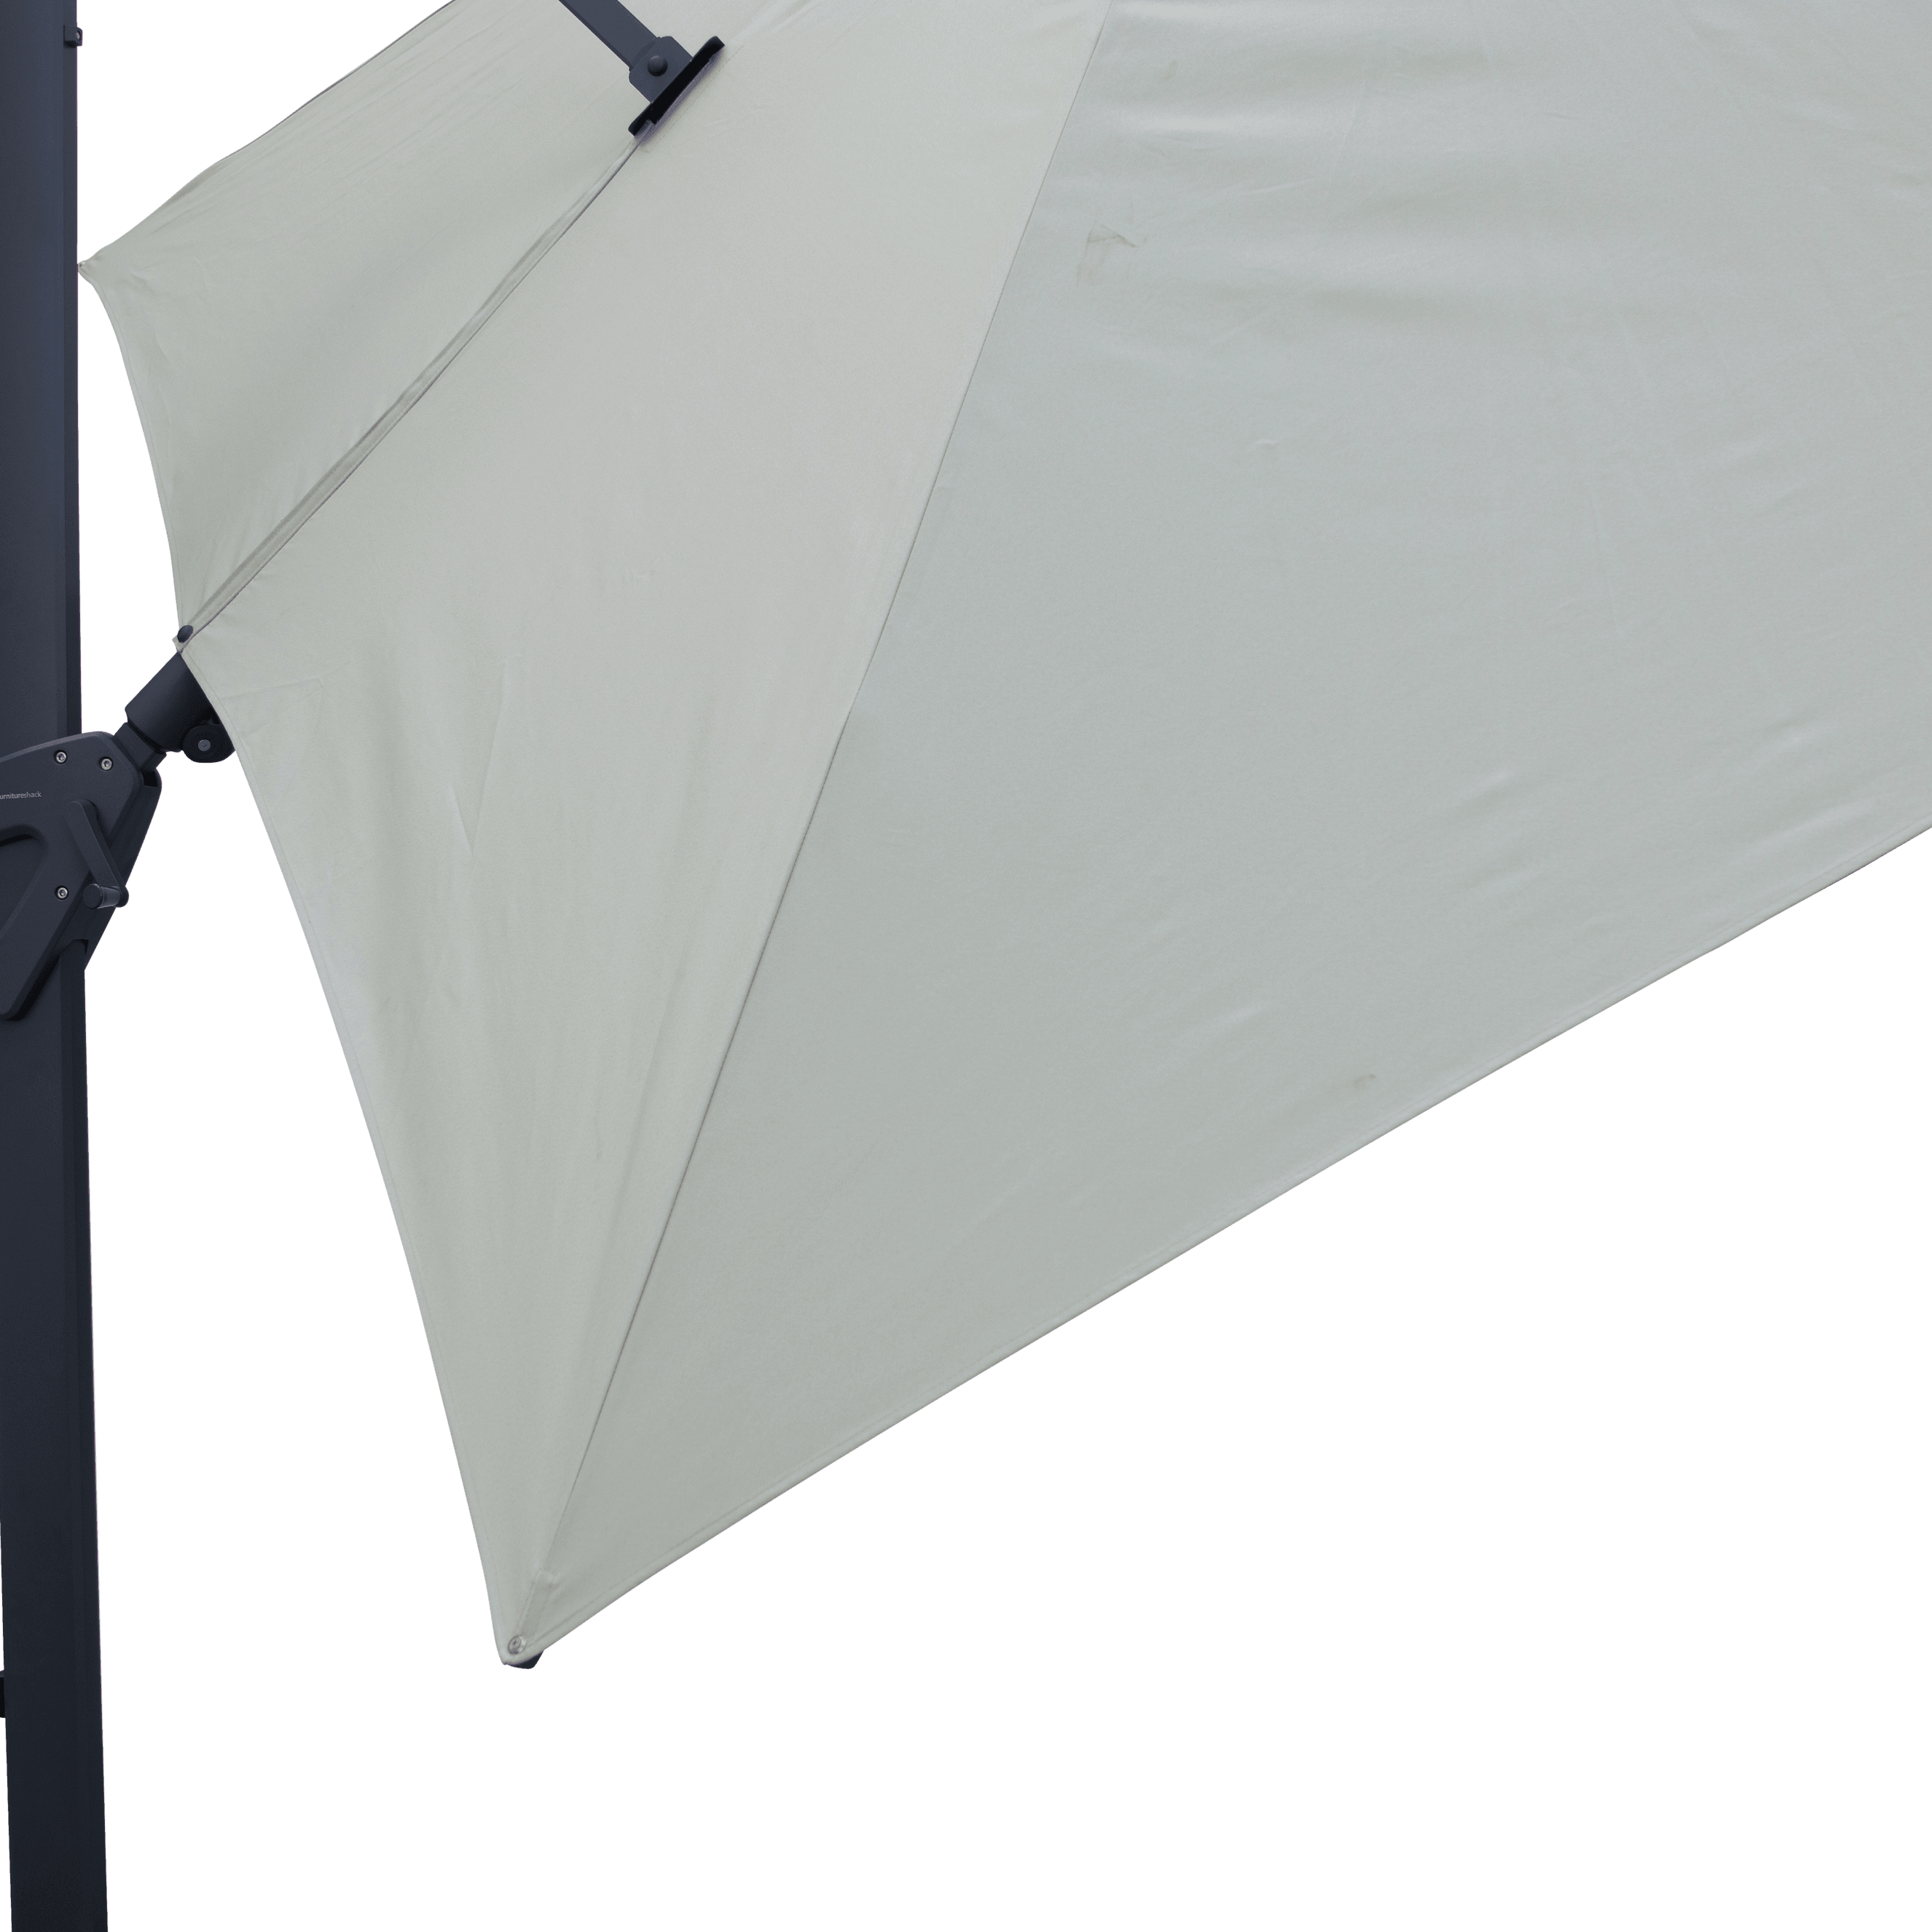 Oasis 3x3m Premium Outdoor Umbrella in Linen Olefin Fabric and Aluminium Frame - The Furniture Shack